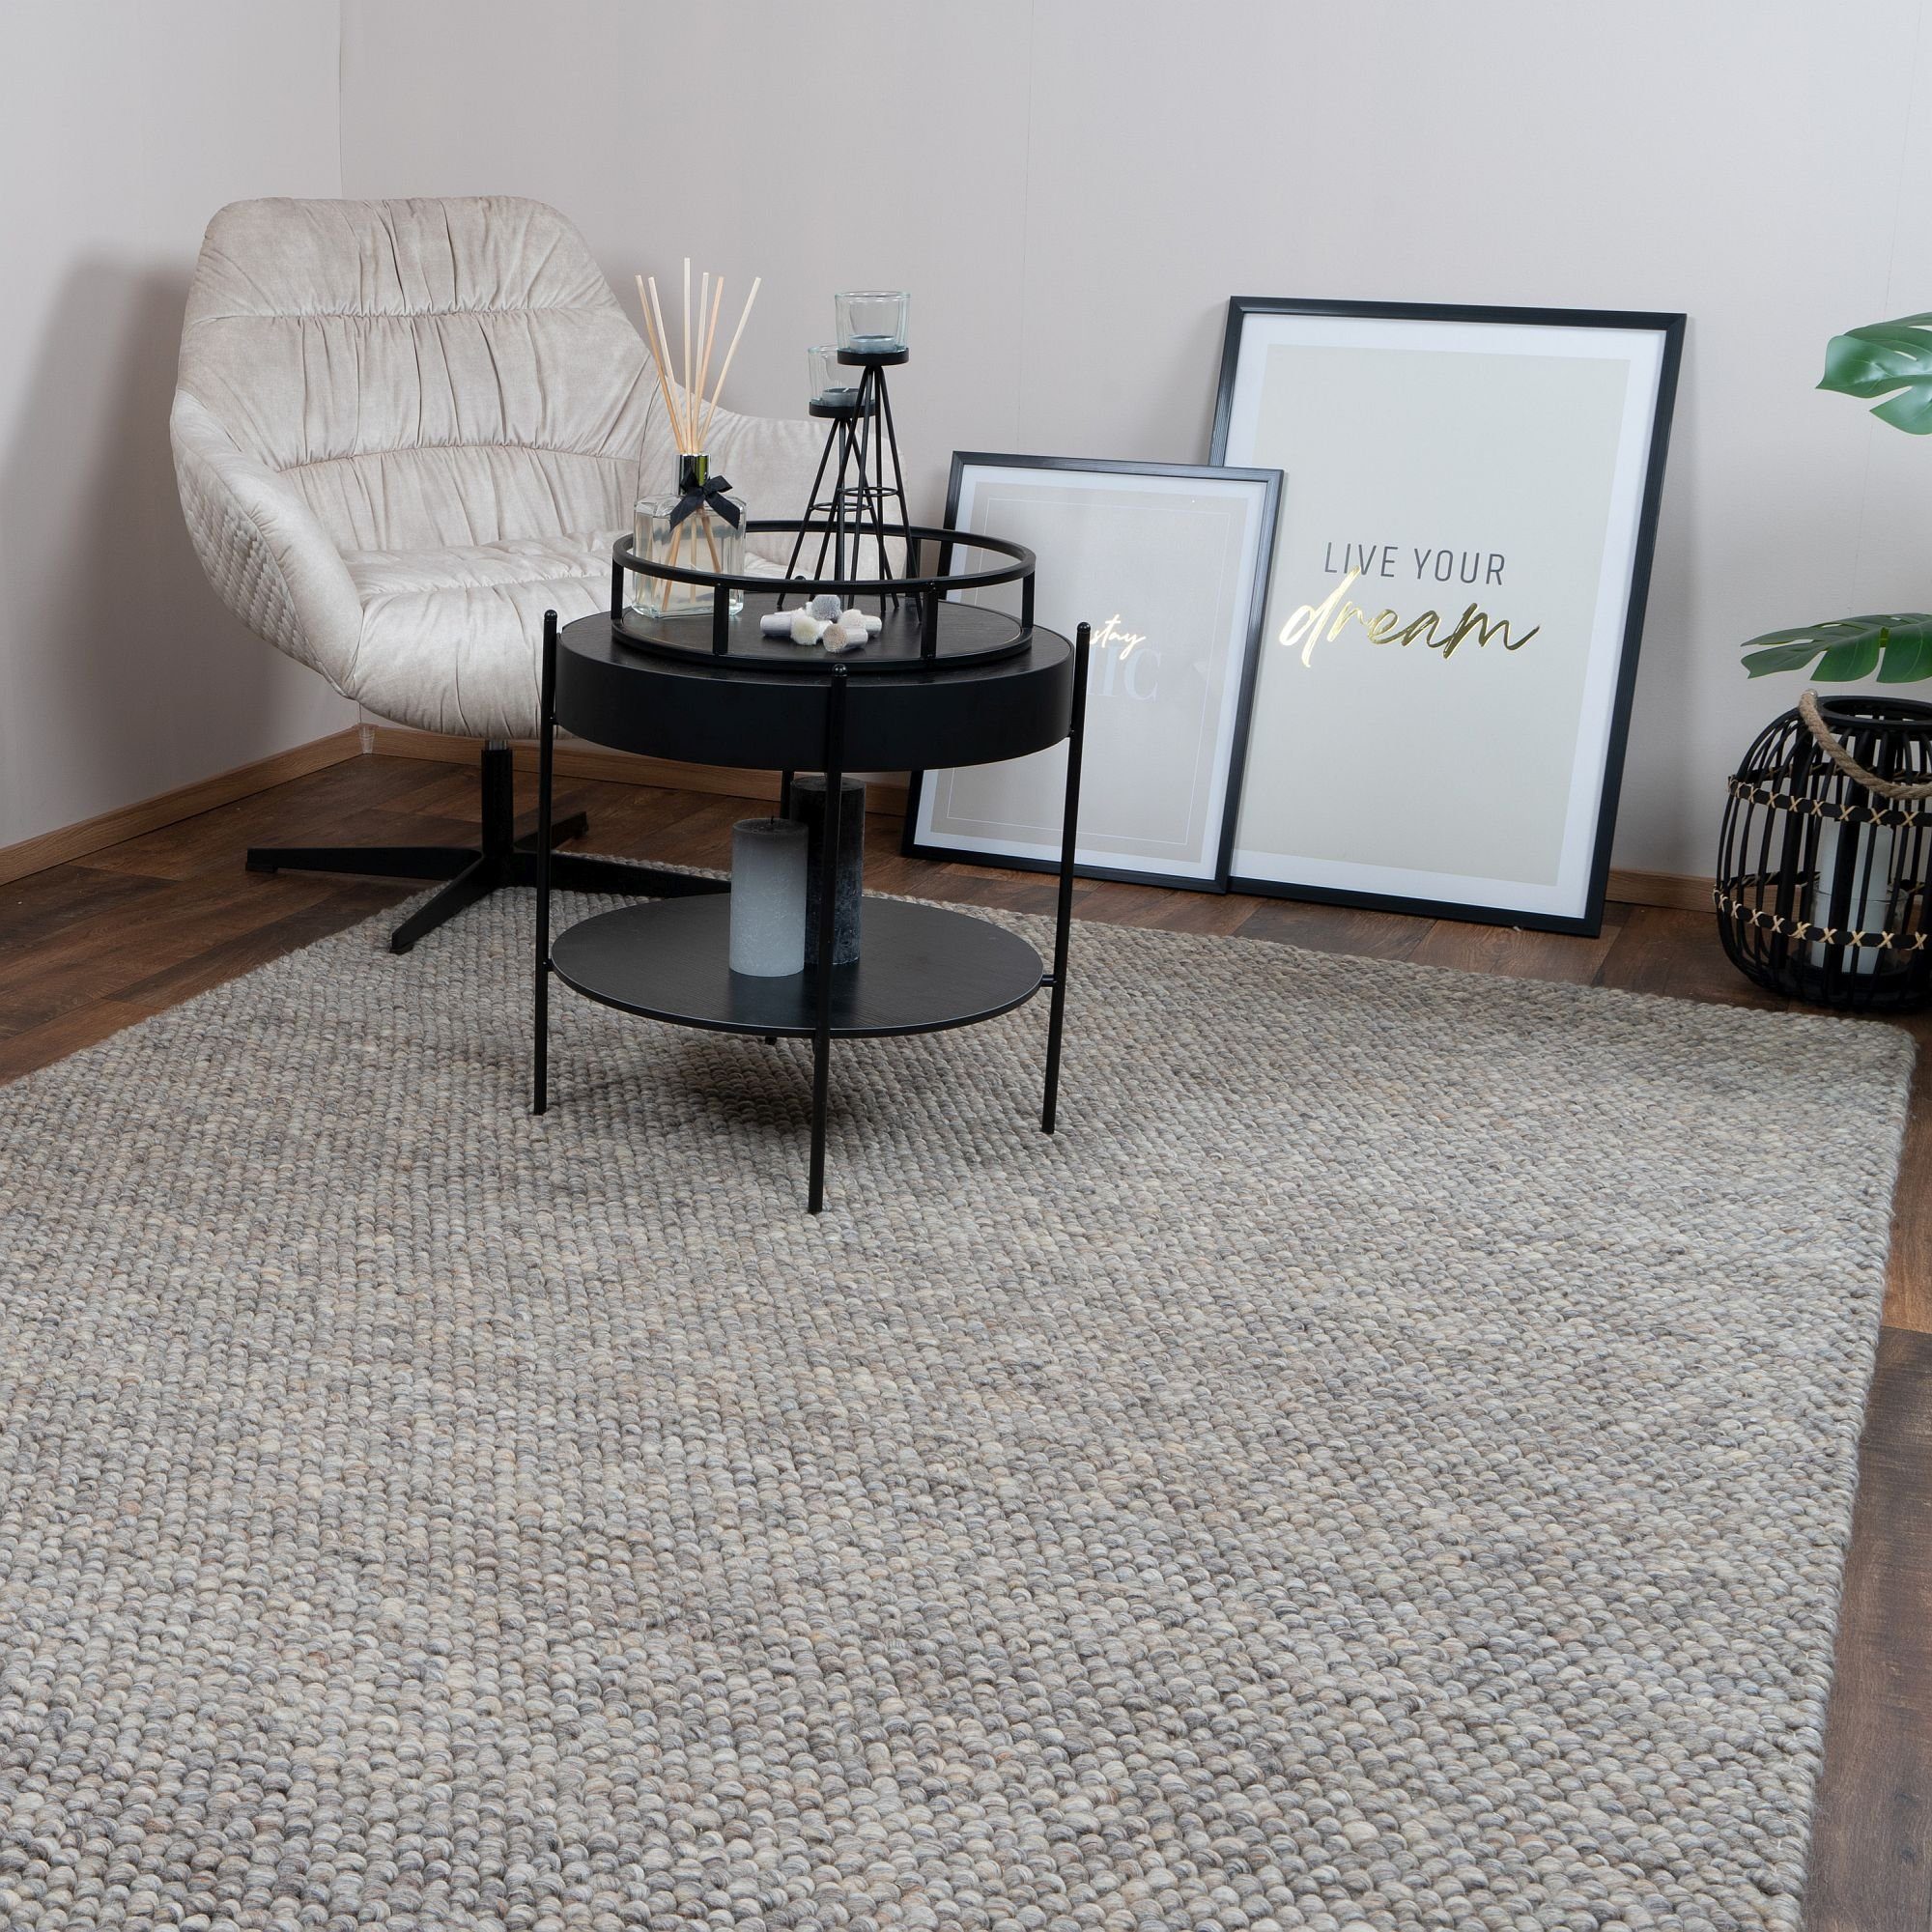 Melange, Wohnzimmer modern Designer Teppich Wolle Elfenbein WOOLY Concept Taupe Designteppich Natur Consilio